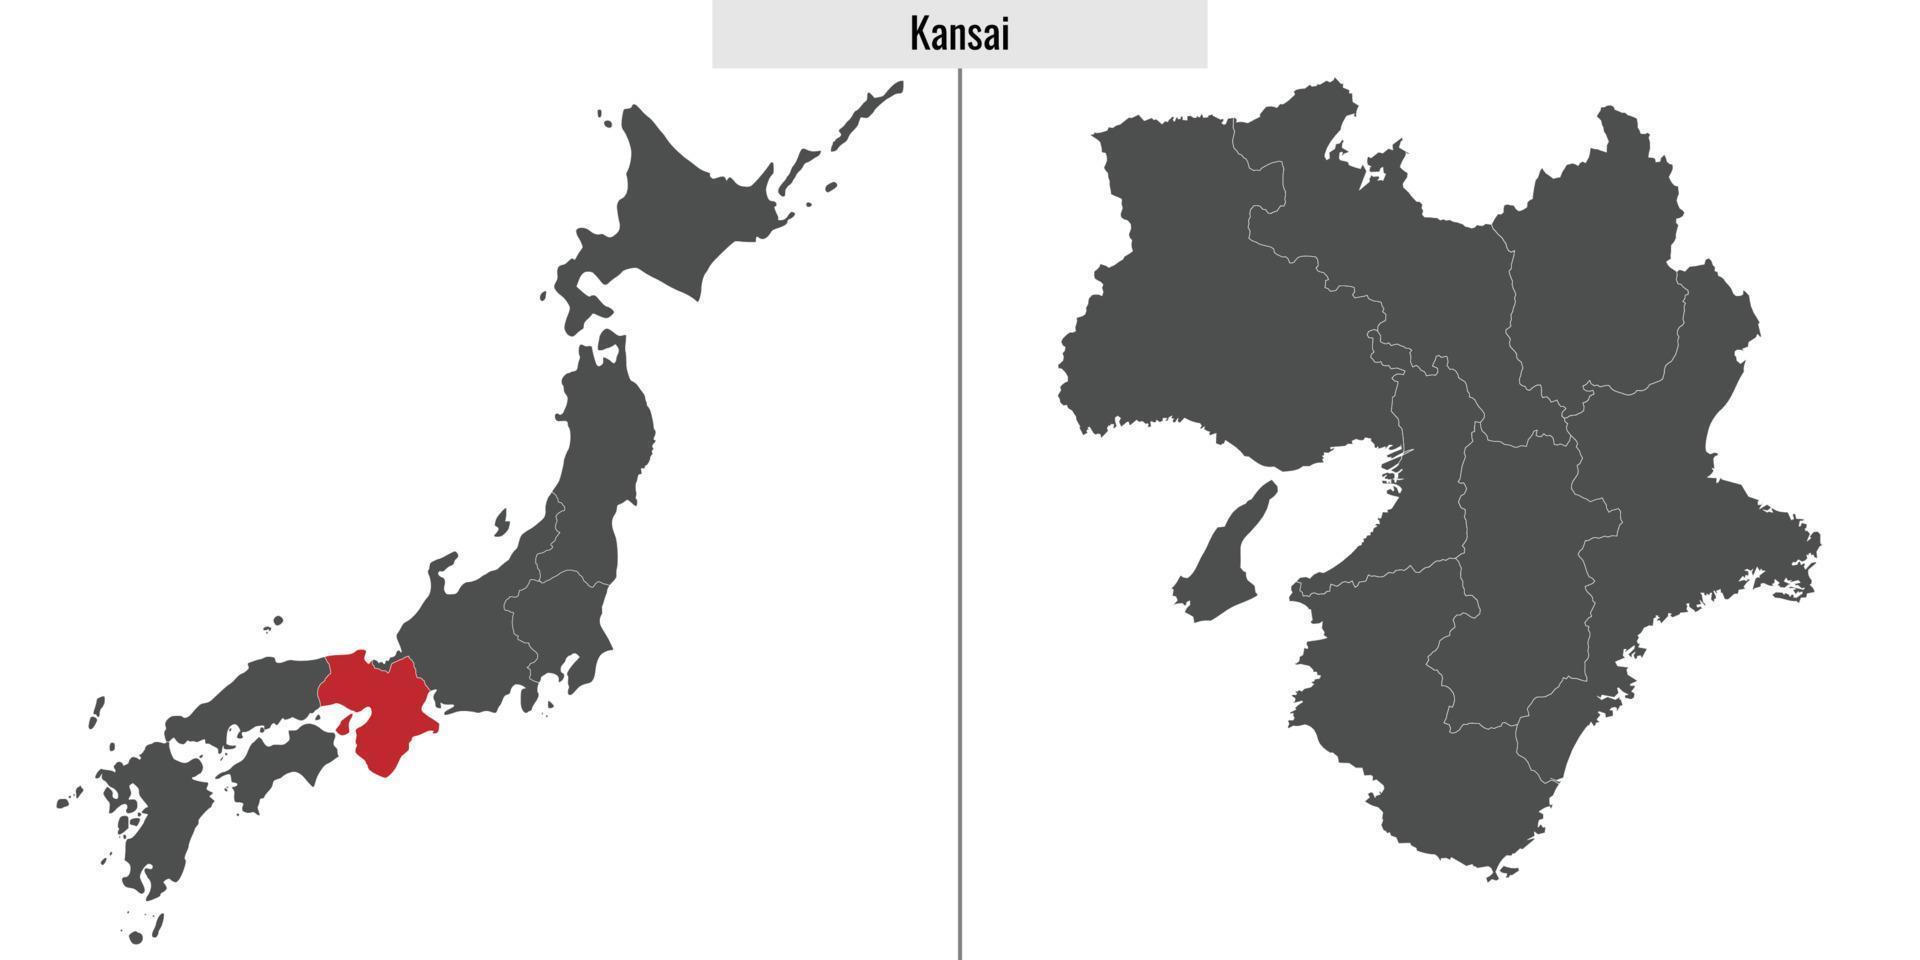 map region of Japan vector